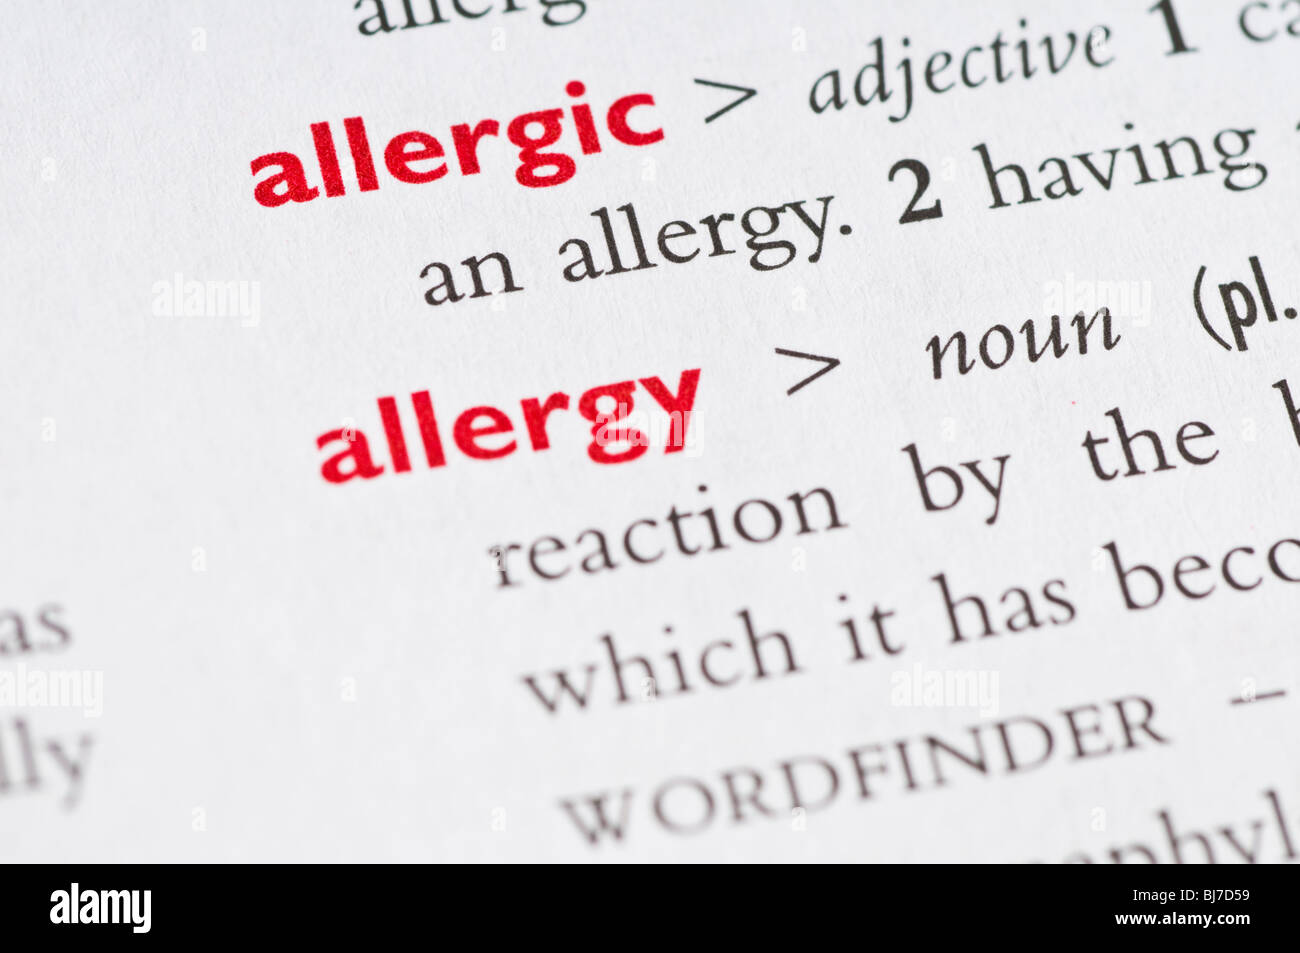 Definición de diccionario de la palabra "alergia" Foto de stock